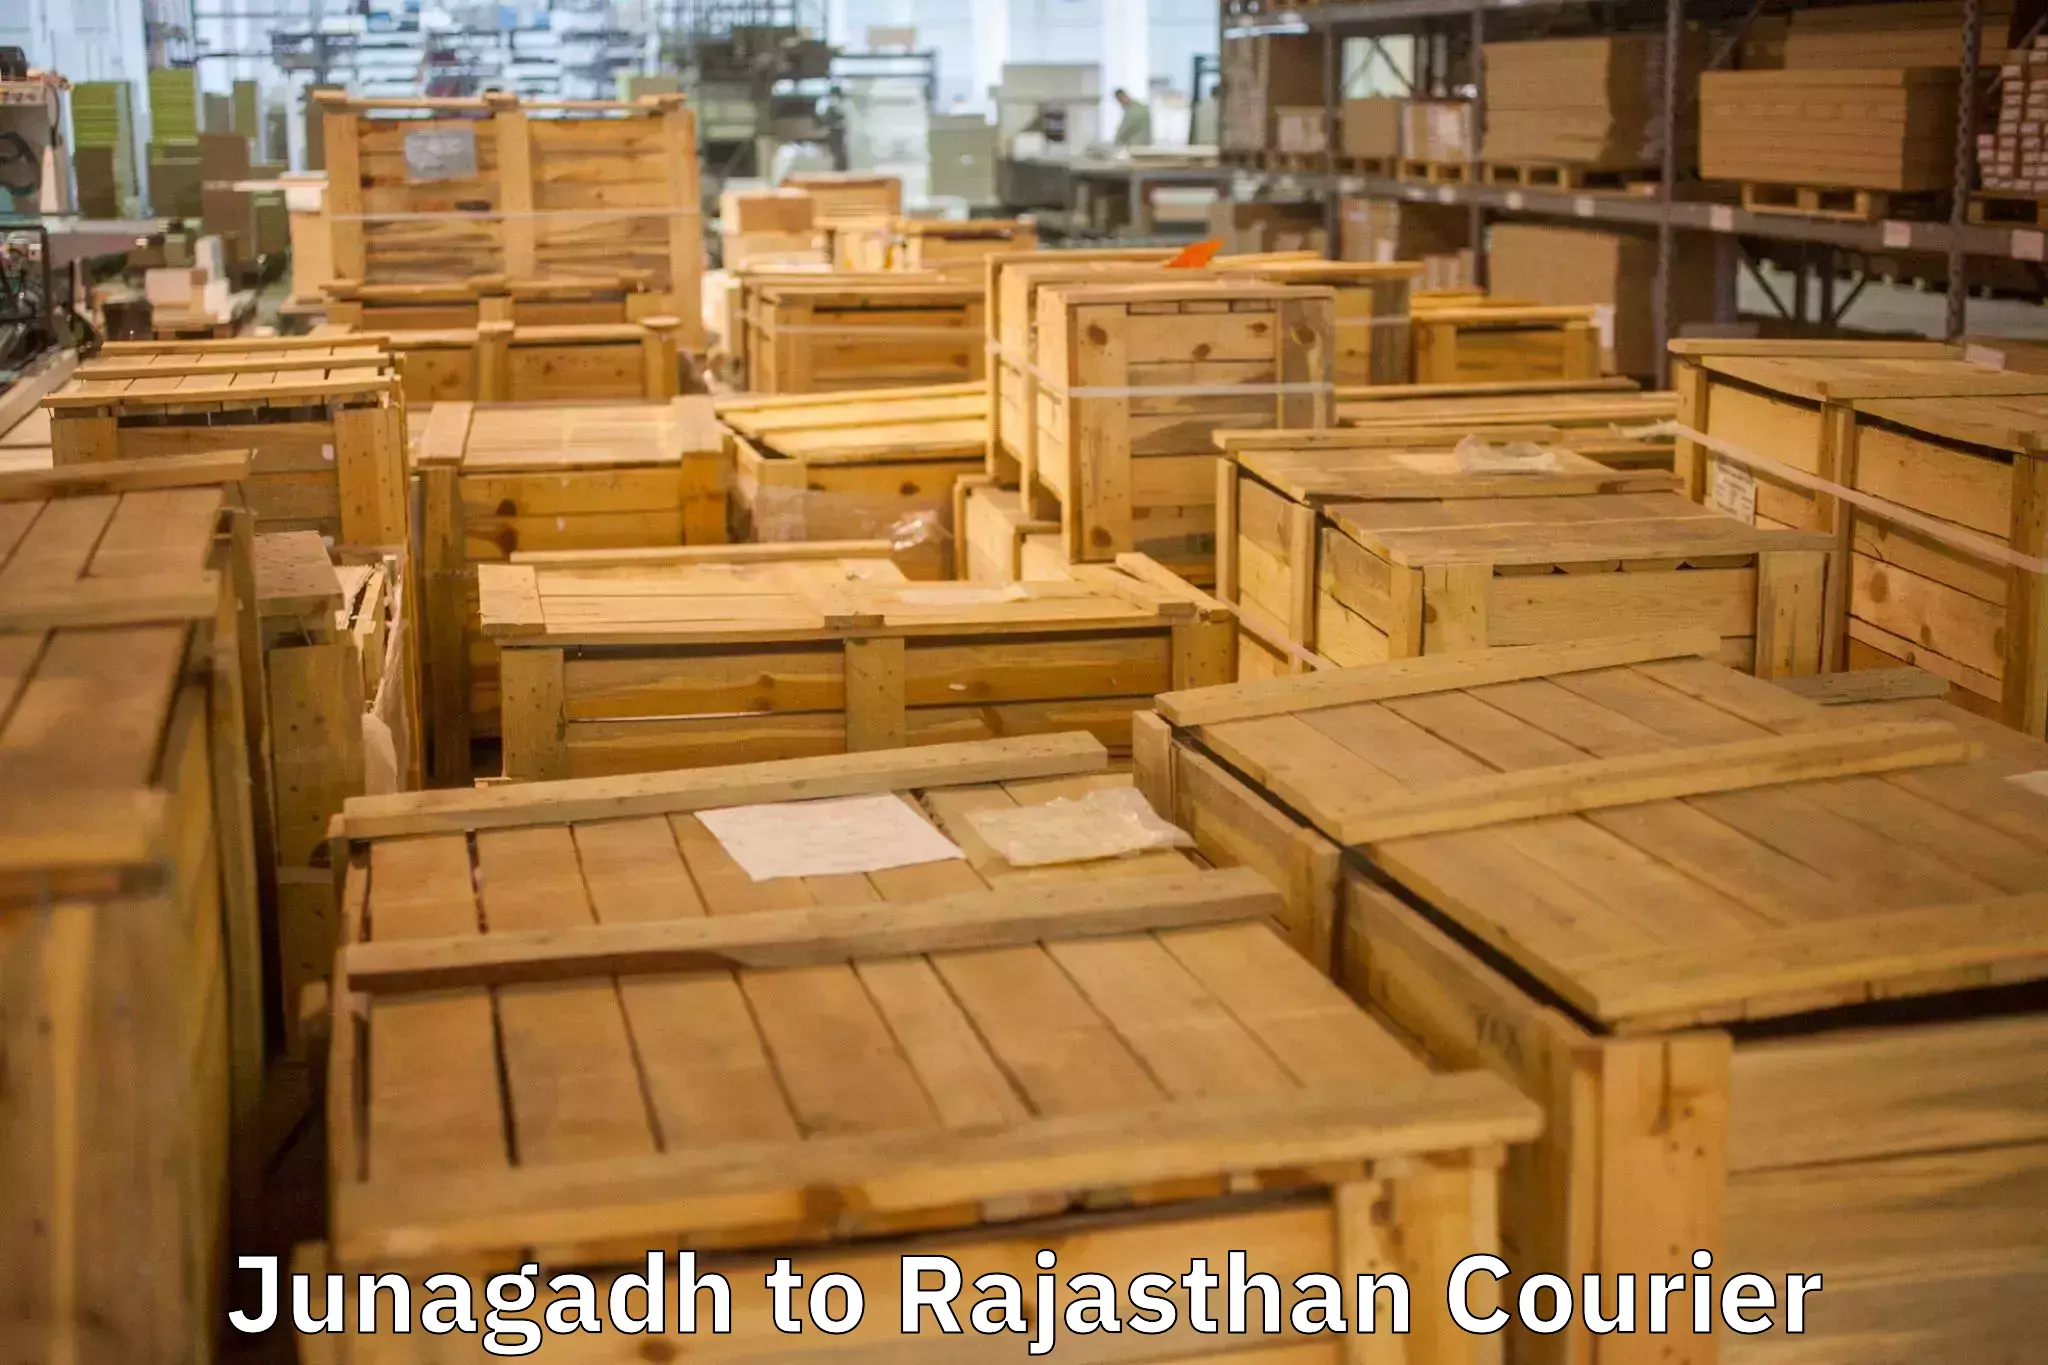 Residential moving experts Junagadh to Rajasthan